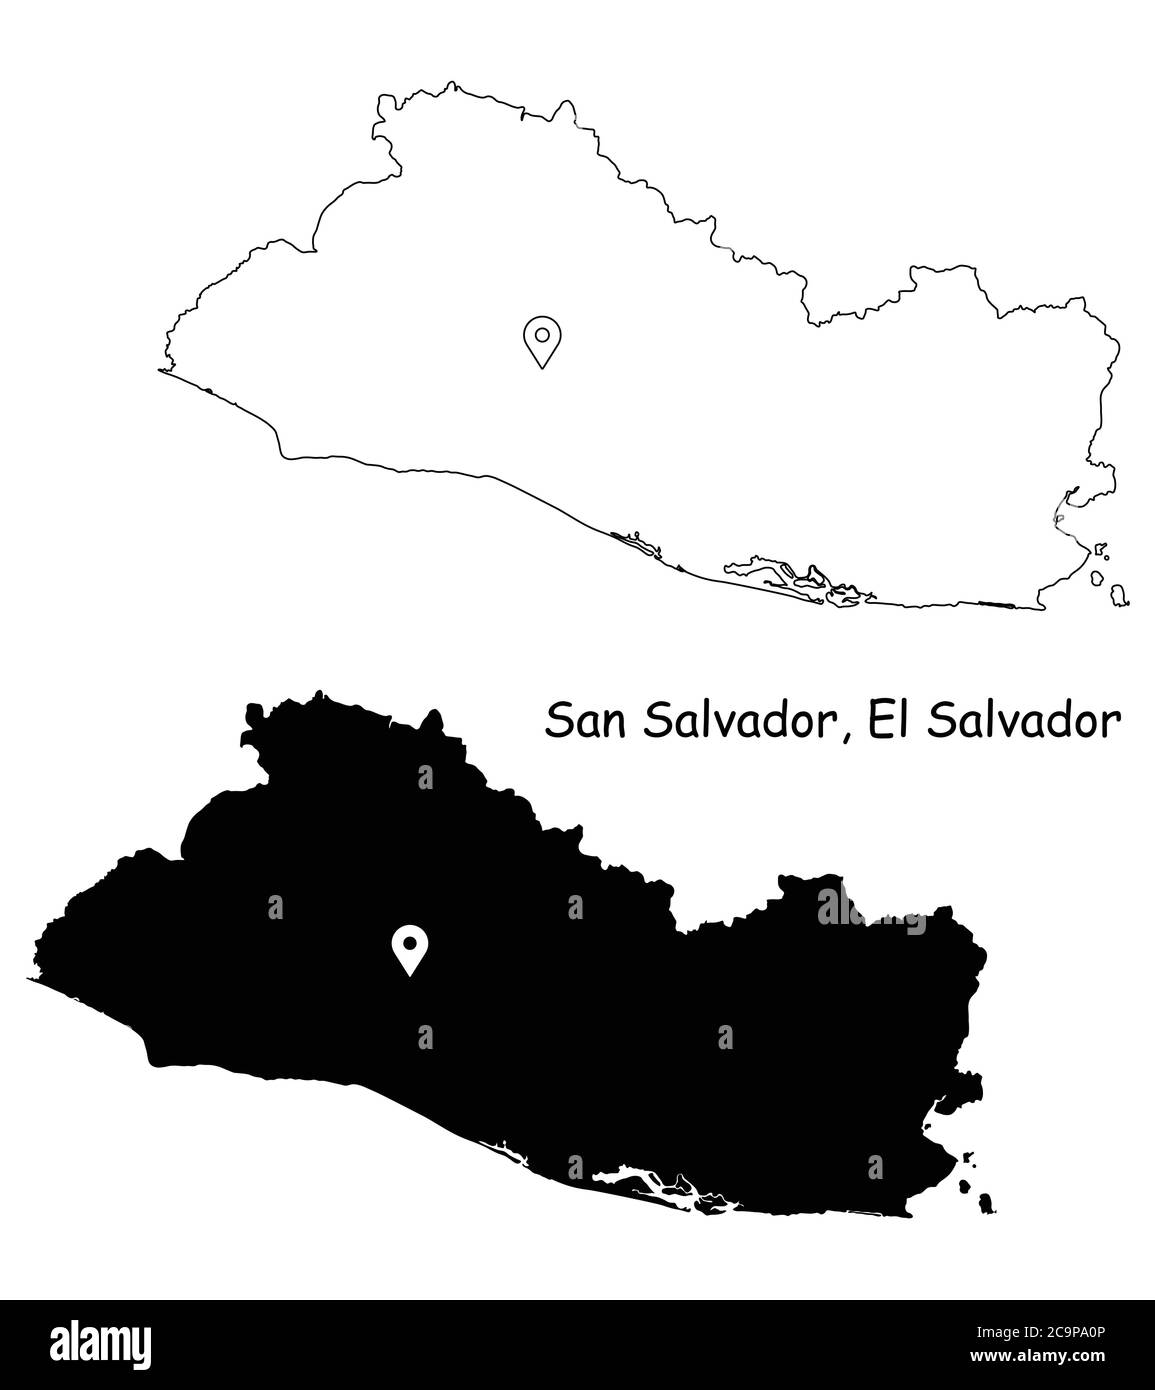 San Salvador El Salvador. Carte détaillée du pays avec broche d'emplacement sur Capital City. Cartes silhouettes et vectorielles noires isolées sur fond blanc. EPS Illustration de Vecteur